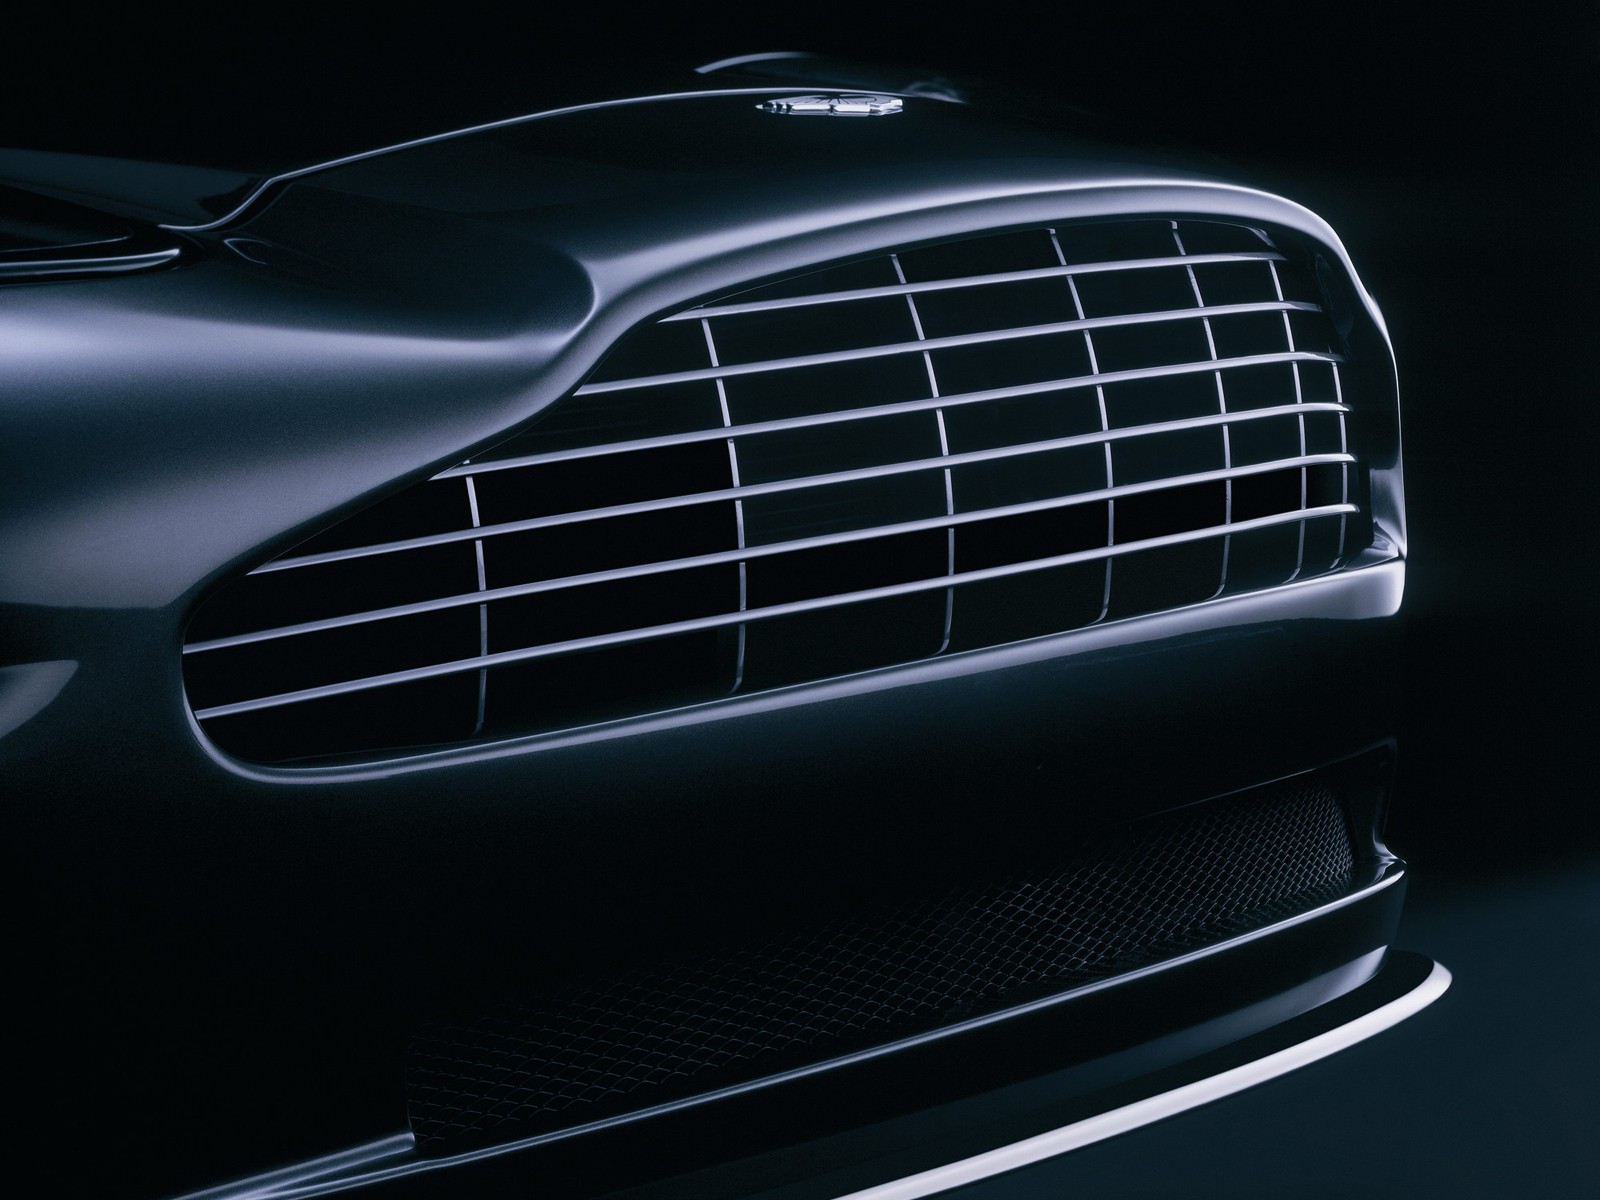 Aston Martin V12 Vanquish | HD Wallpapers